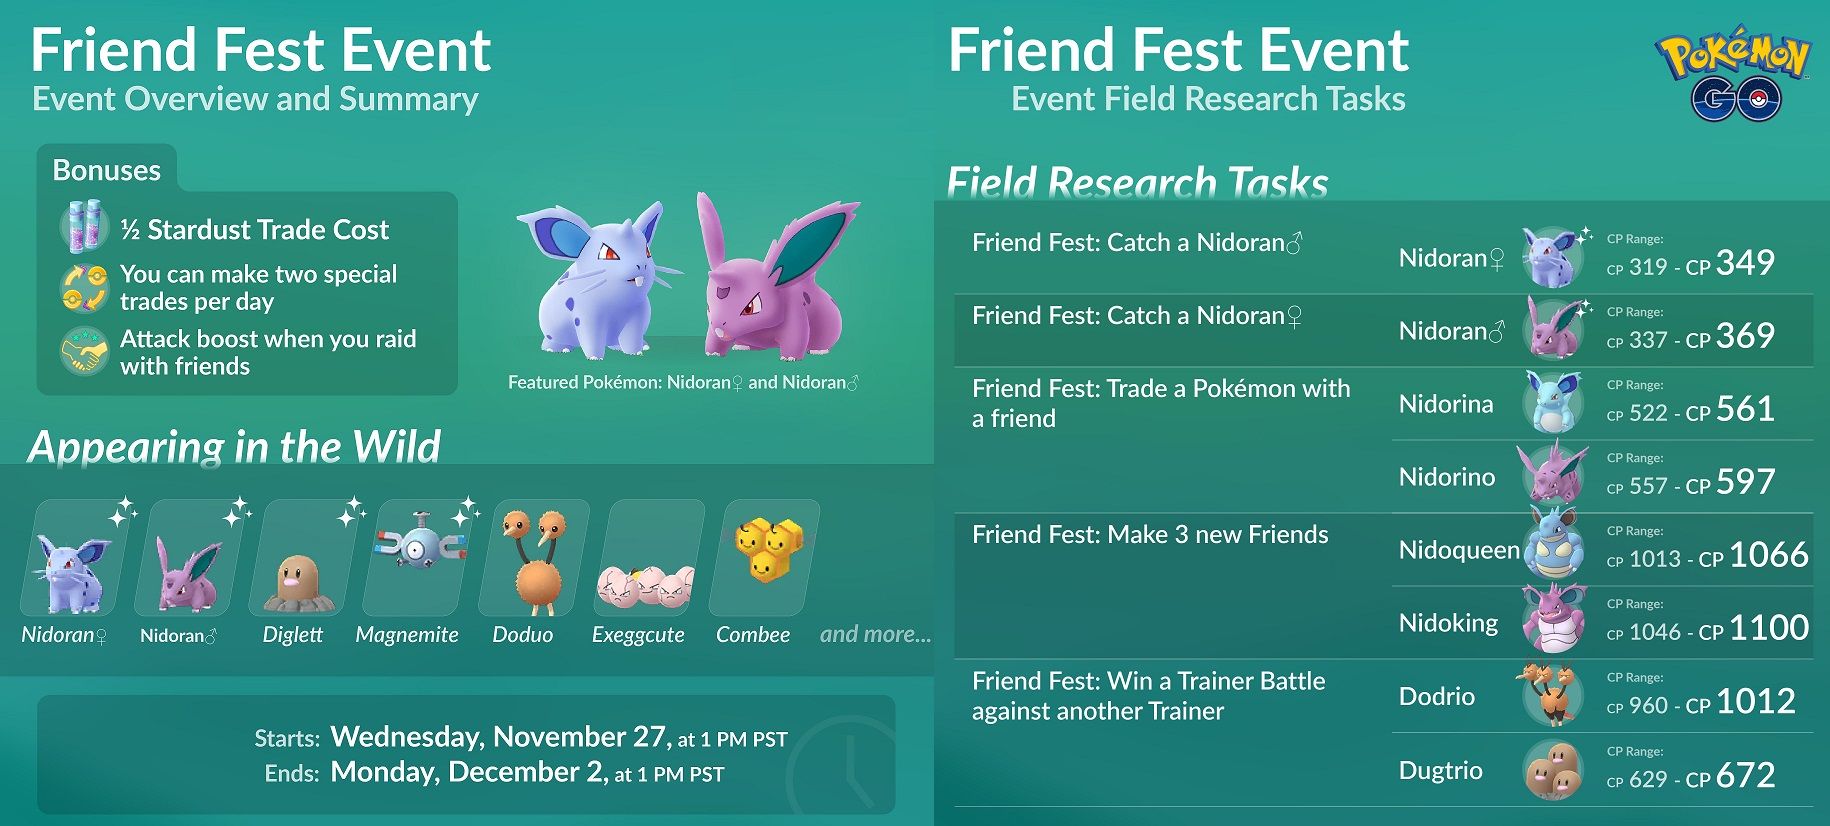 Pokemon GO Full Friend Fest Event Guide